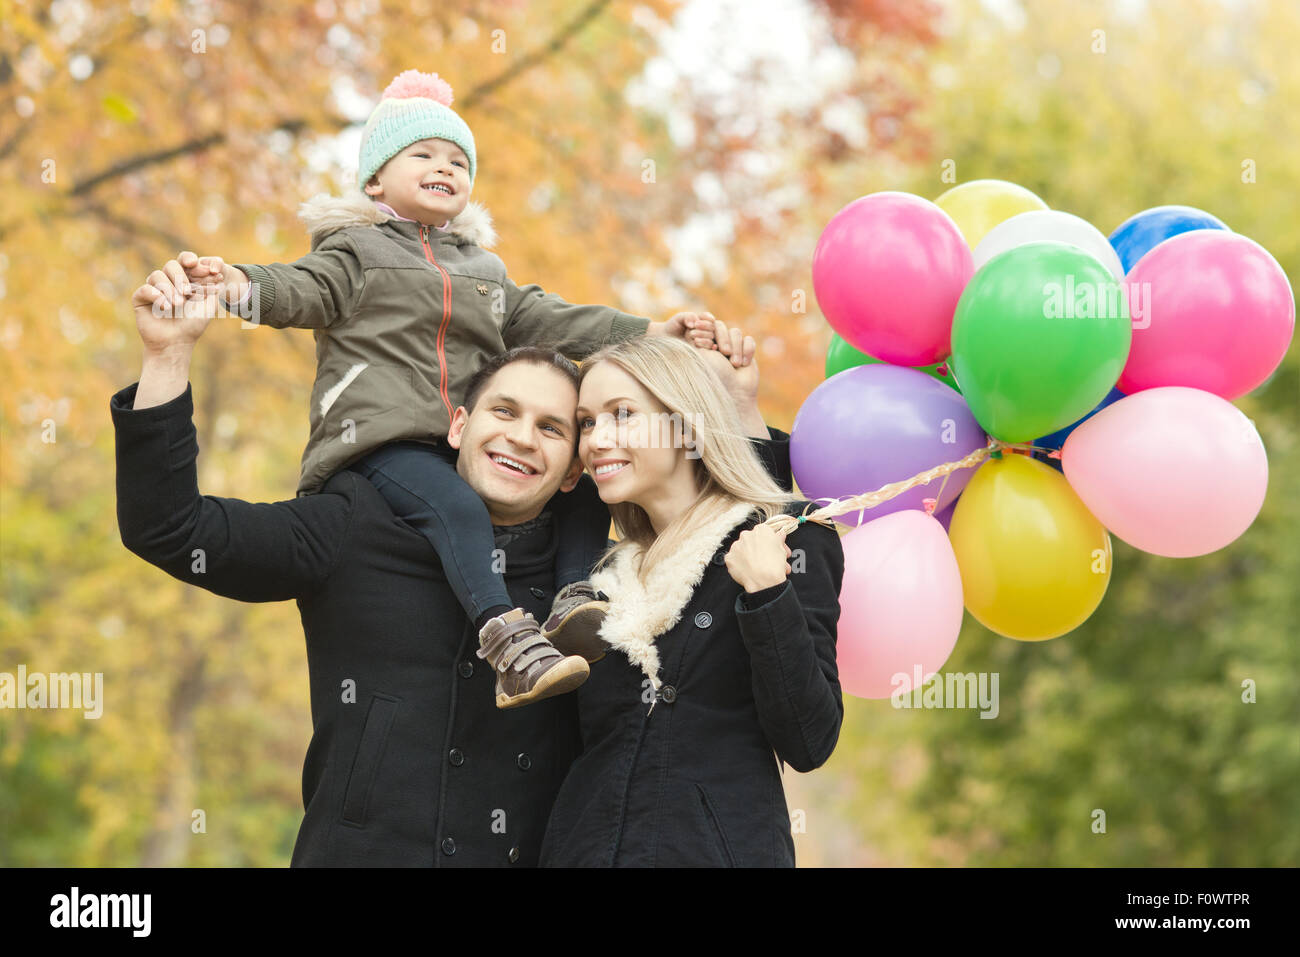 glückliche Familie mit kleinen Kinder und Luftballons, Ausflug im Herbst park Stockfoto